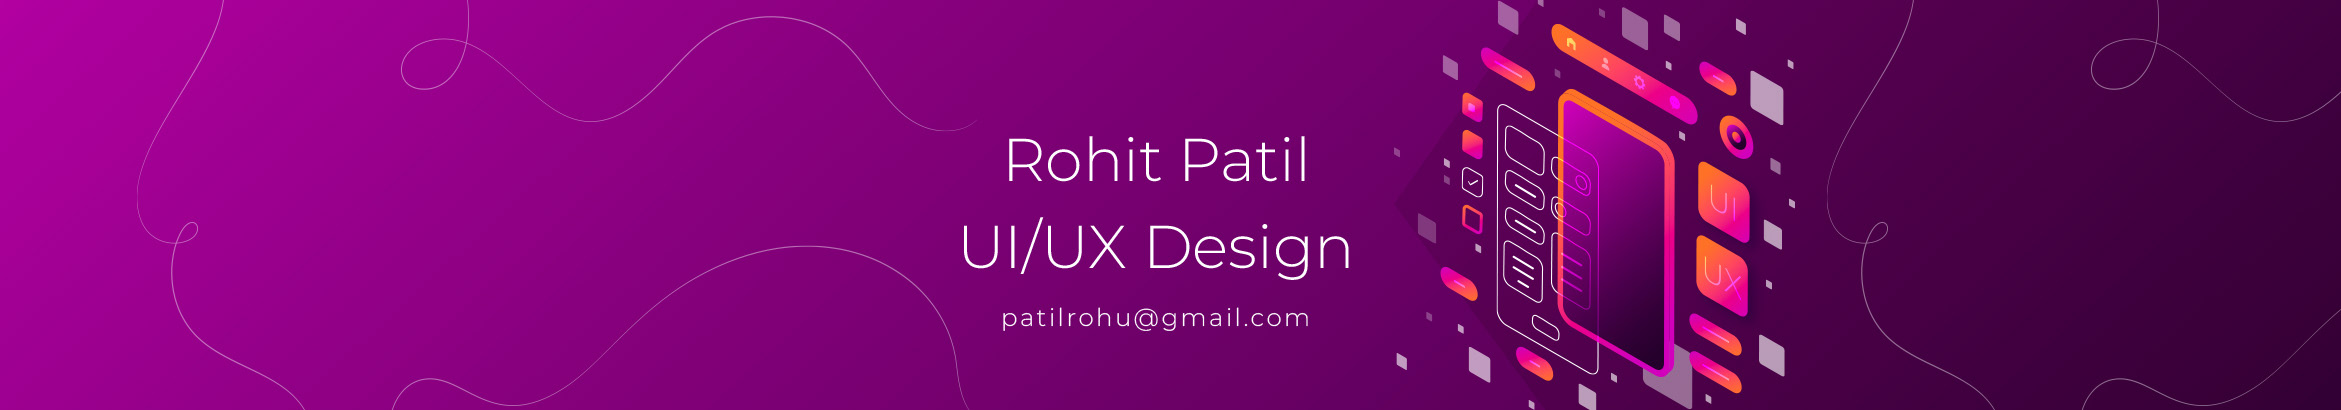 Bannière de profil de Rohit Patil